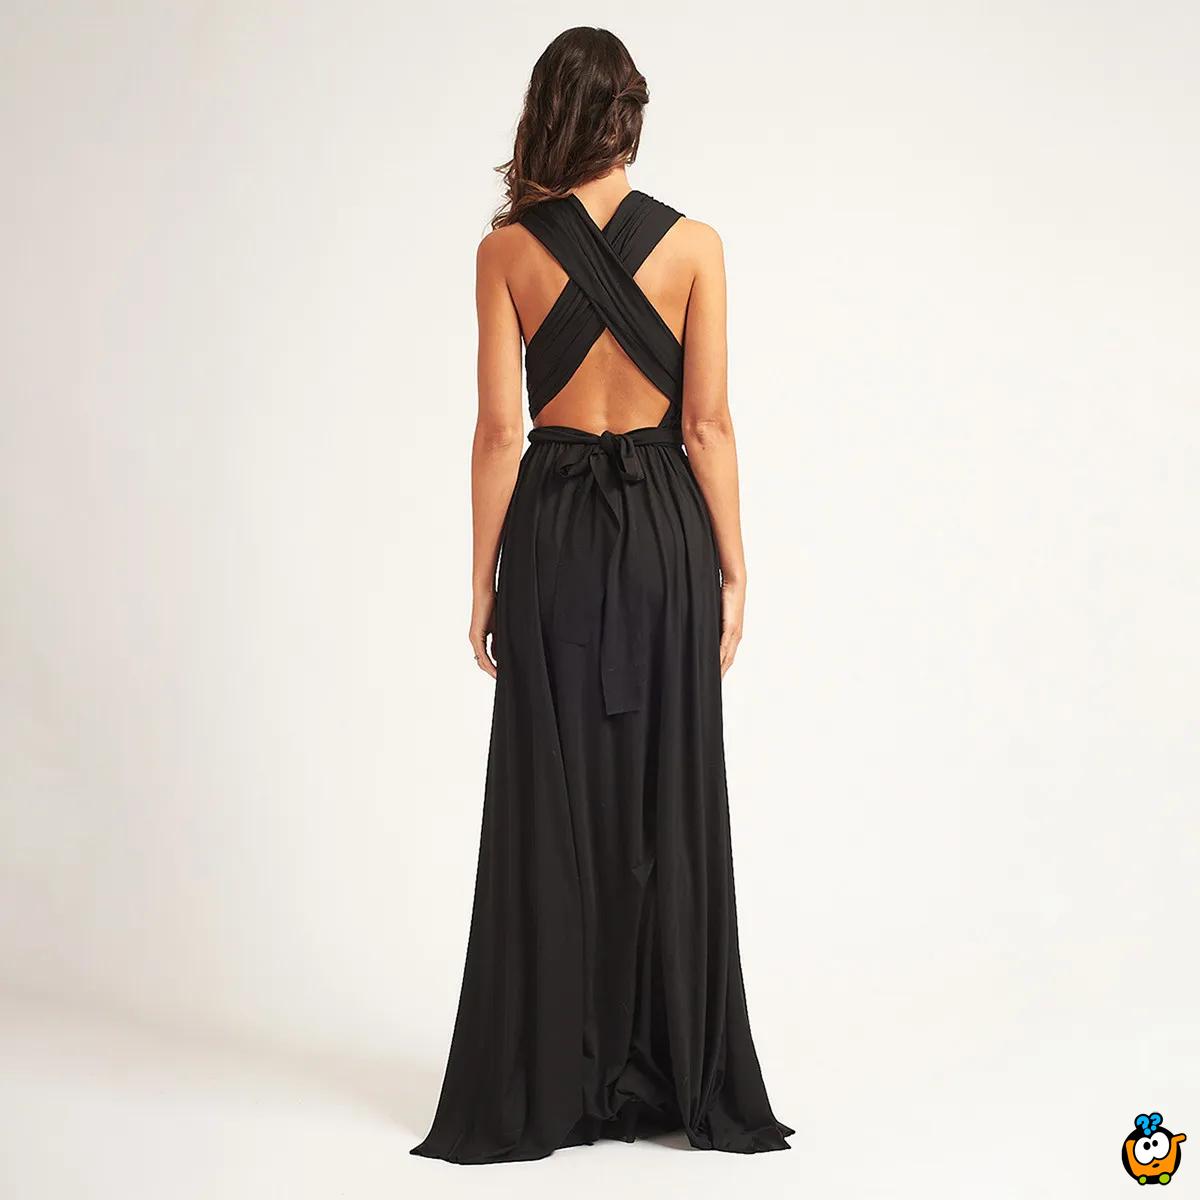 Bianca Black Dress - Crna elegantna haljina sa različitim mogućnostima vezivanja